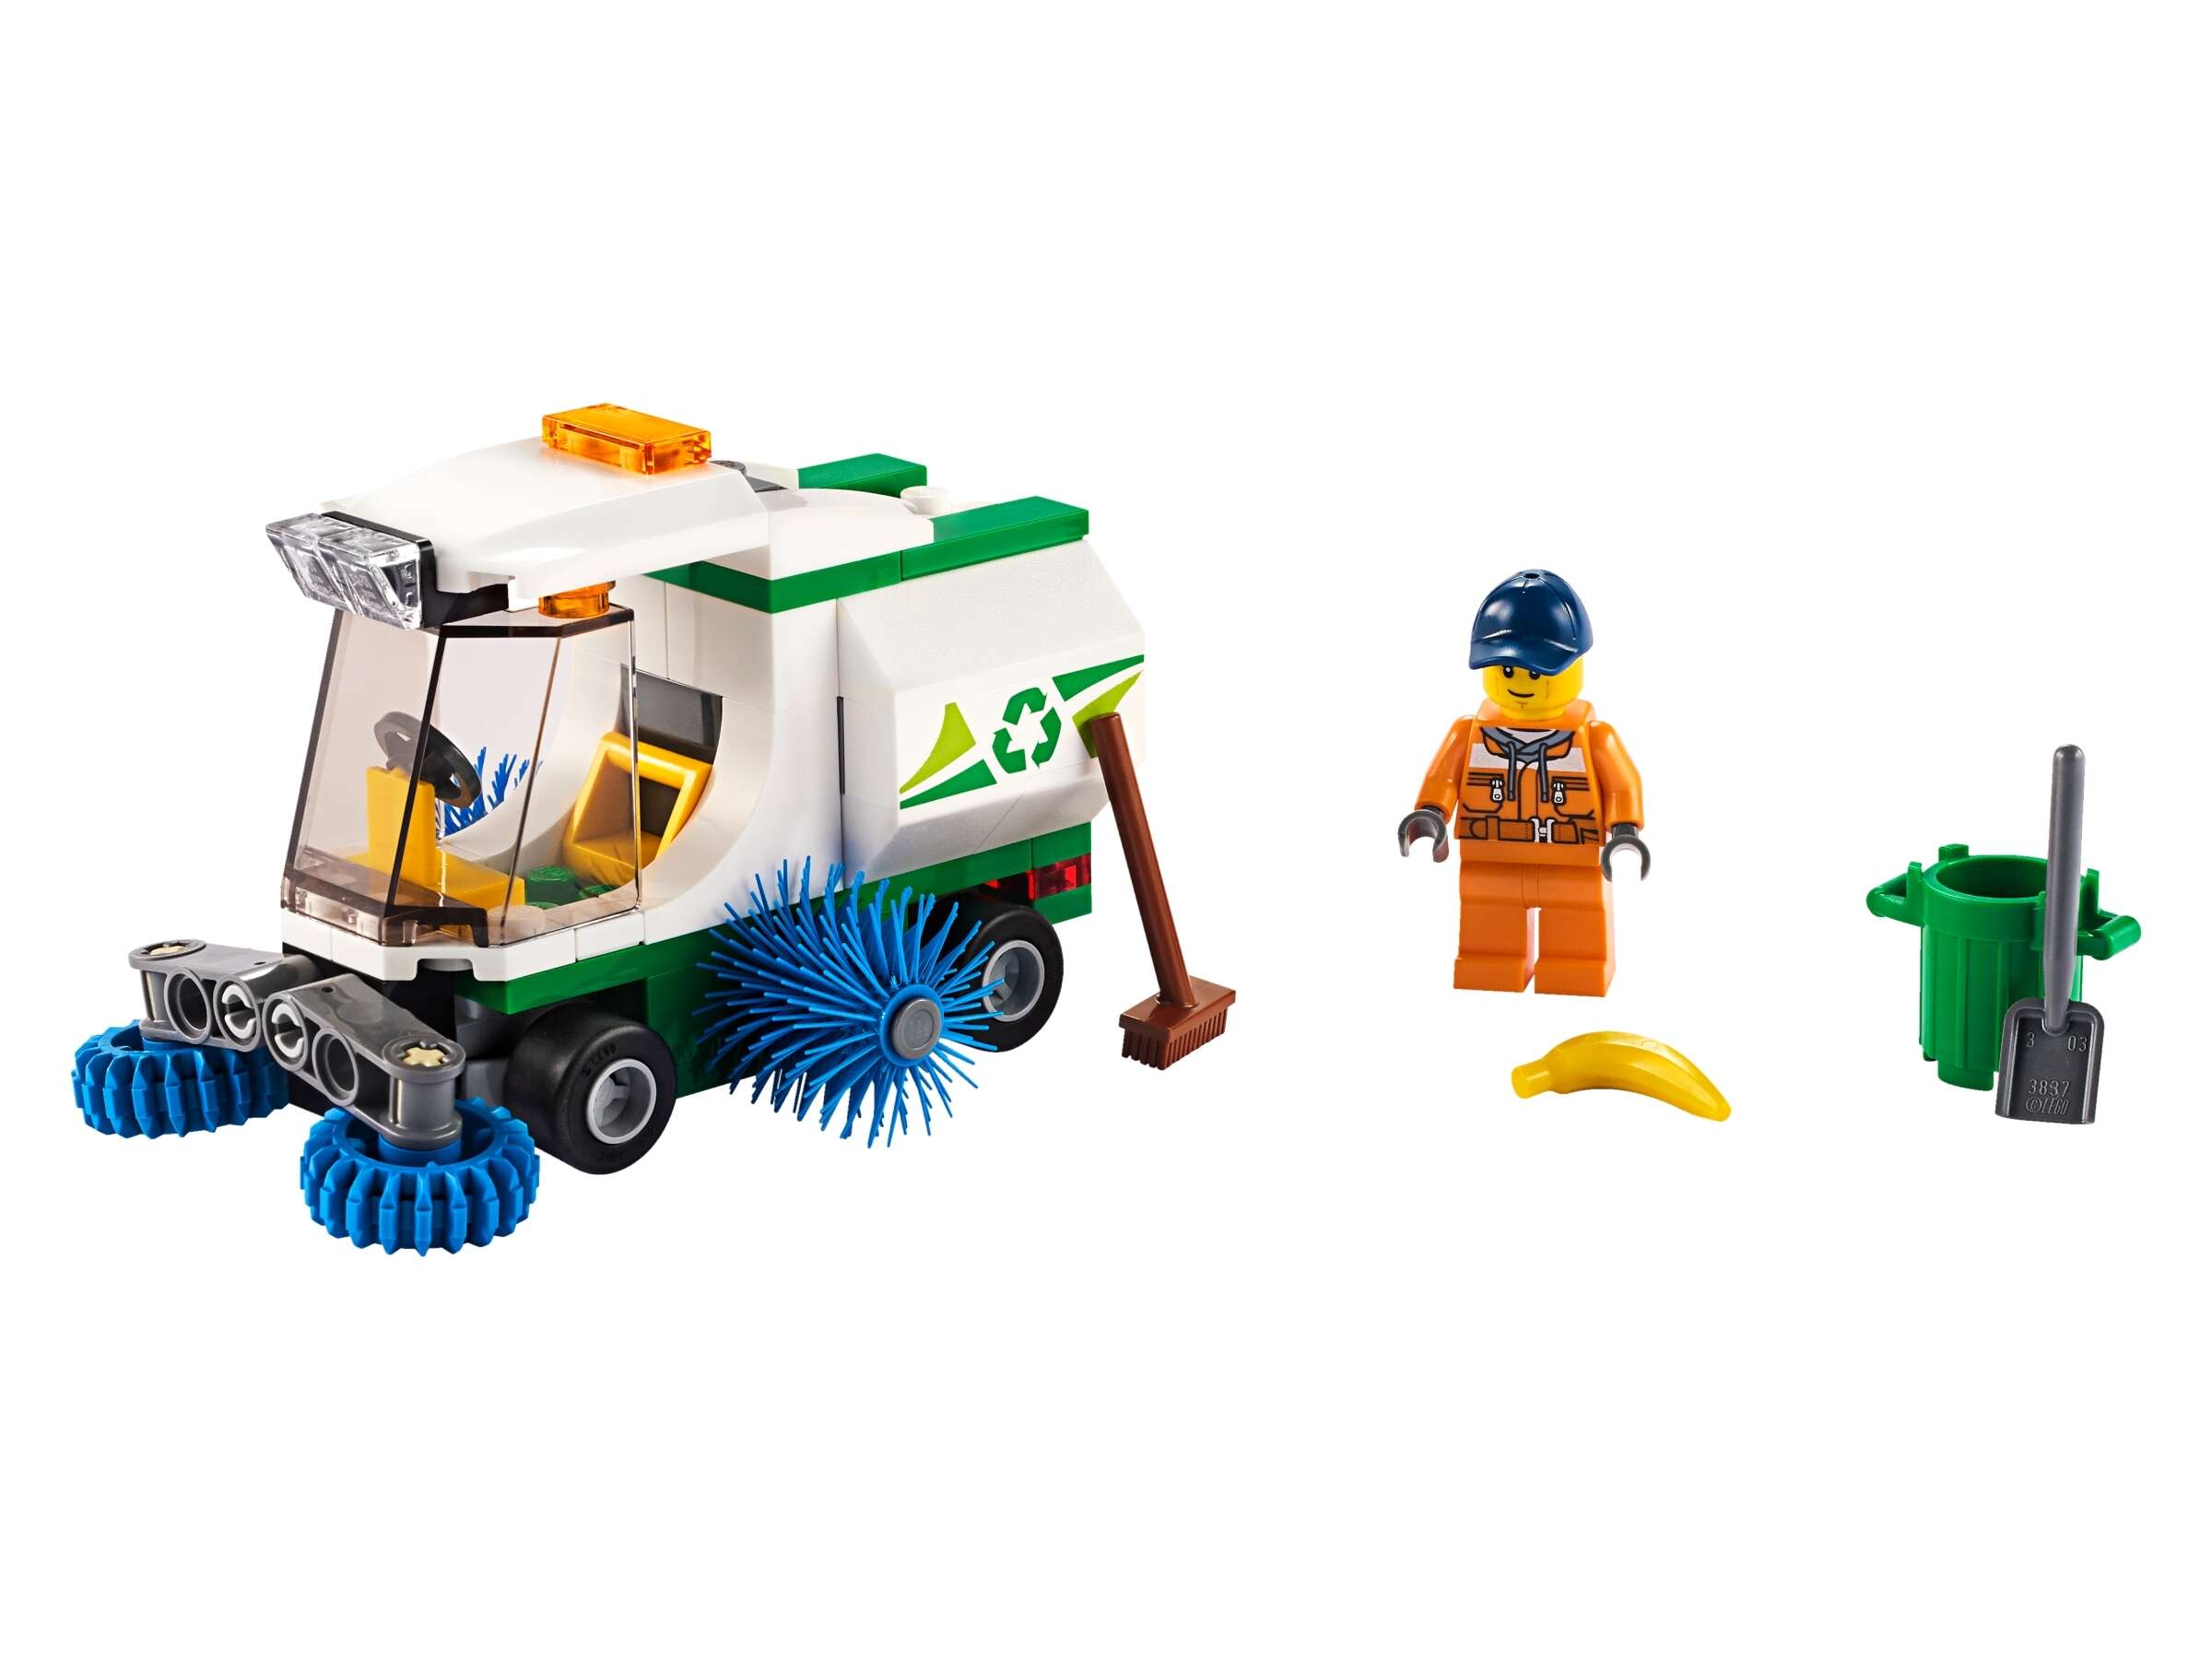 LEGO 60249 City Straßenkehrmaschine mit Fahrer